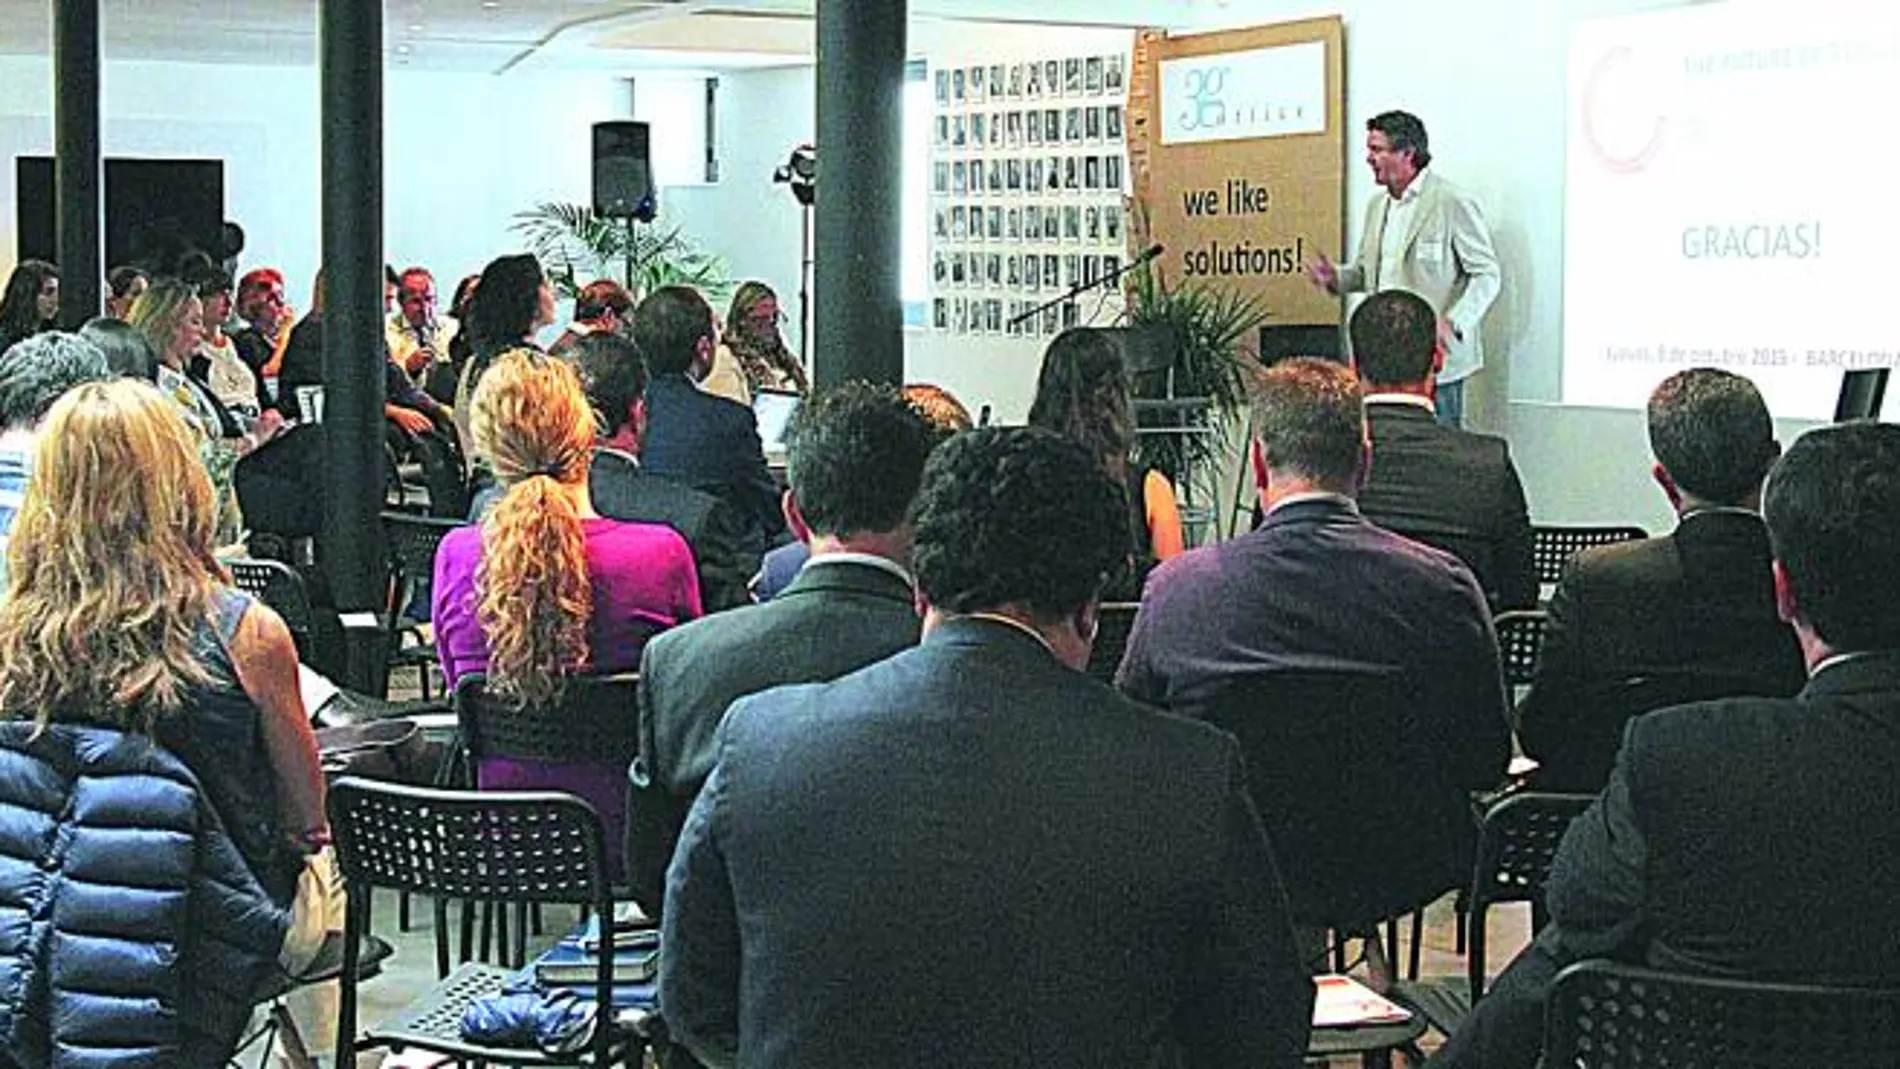 Imagen de la sesión que impartió Francisco Vázquez, de 3g office. A la izquierda, Daniel Yuste durante su intervención